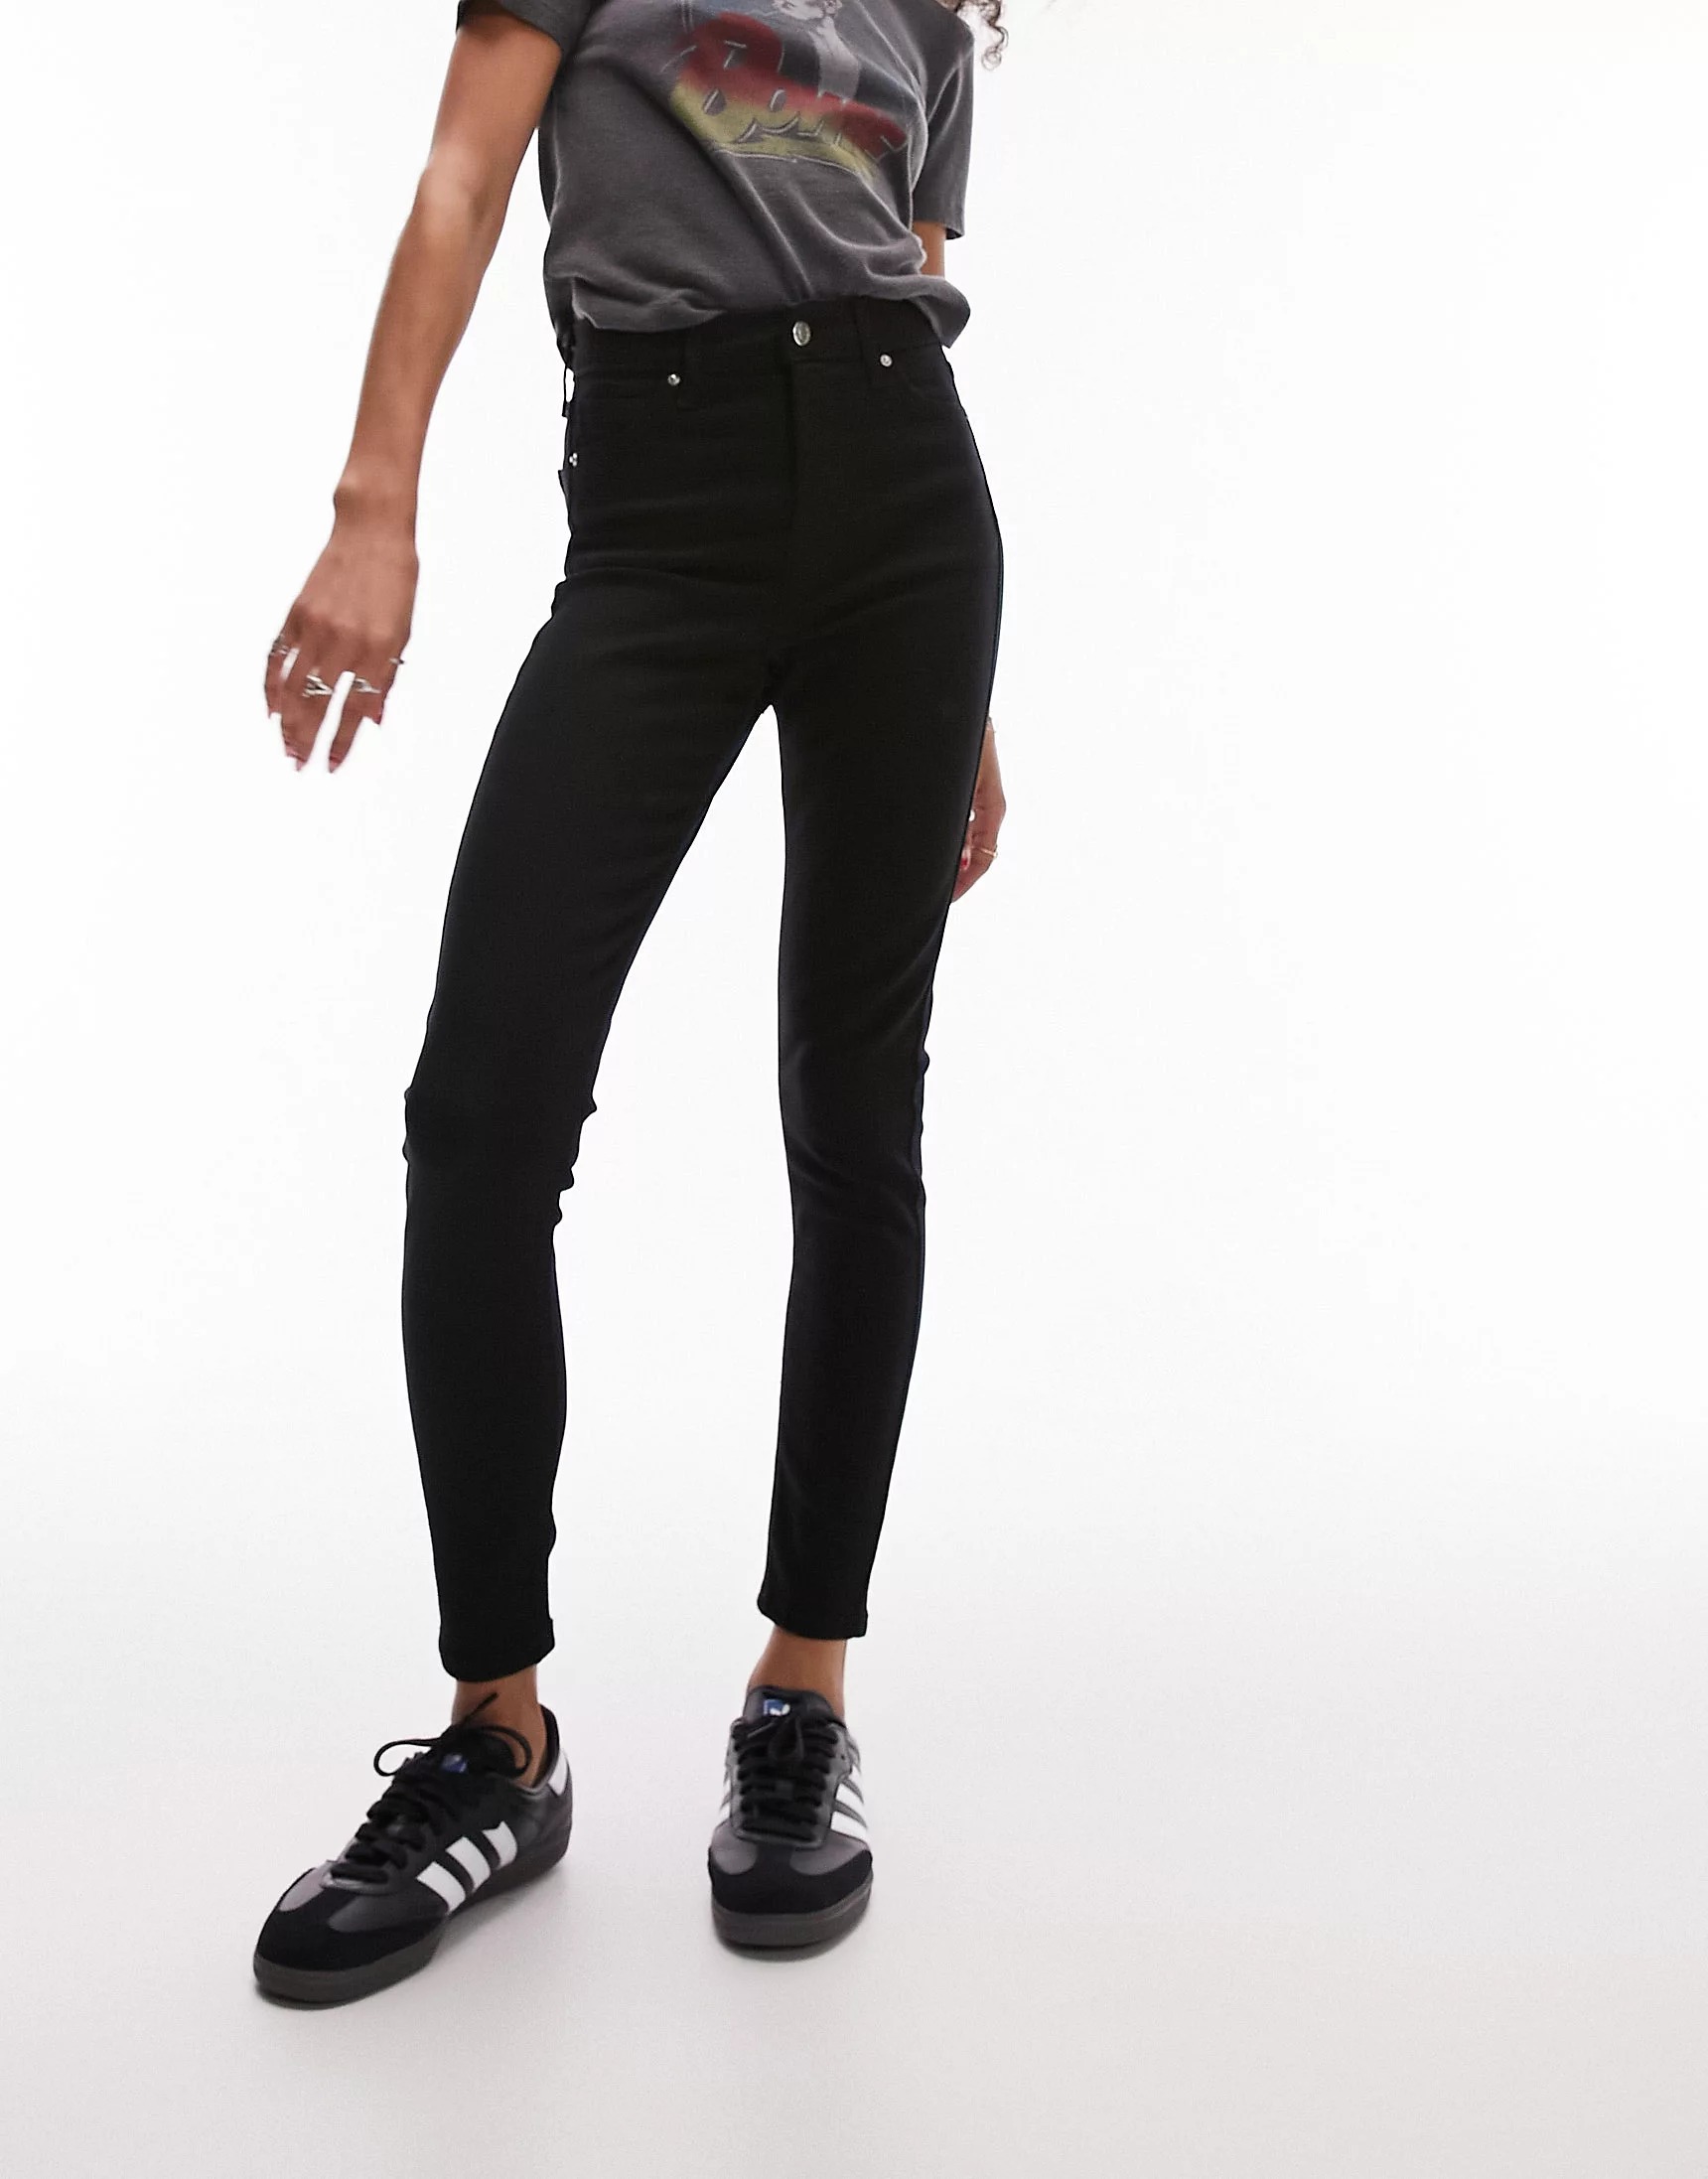 Джинсы Topshop Jamie, темно-черный джинсы мужские стрейчевые облегающие байкерские облегающие брюки из денима с поцарапанной молнией повседневные джинсы в стиле хип хоп 4 ц